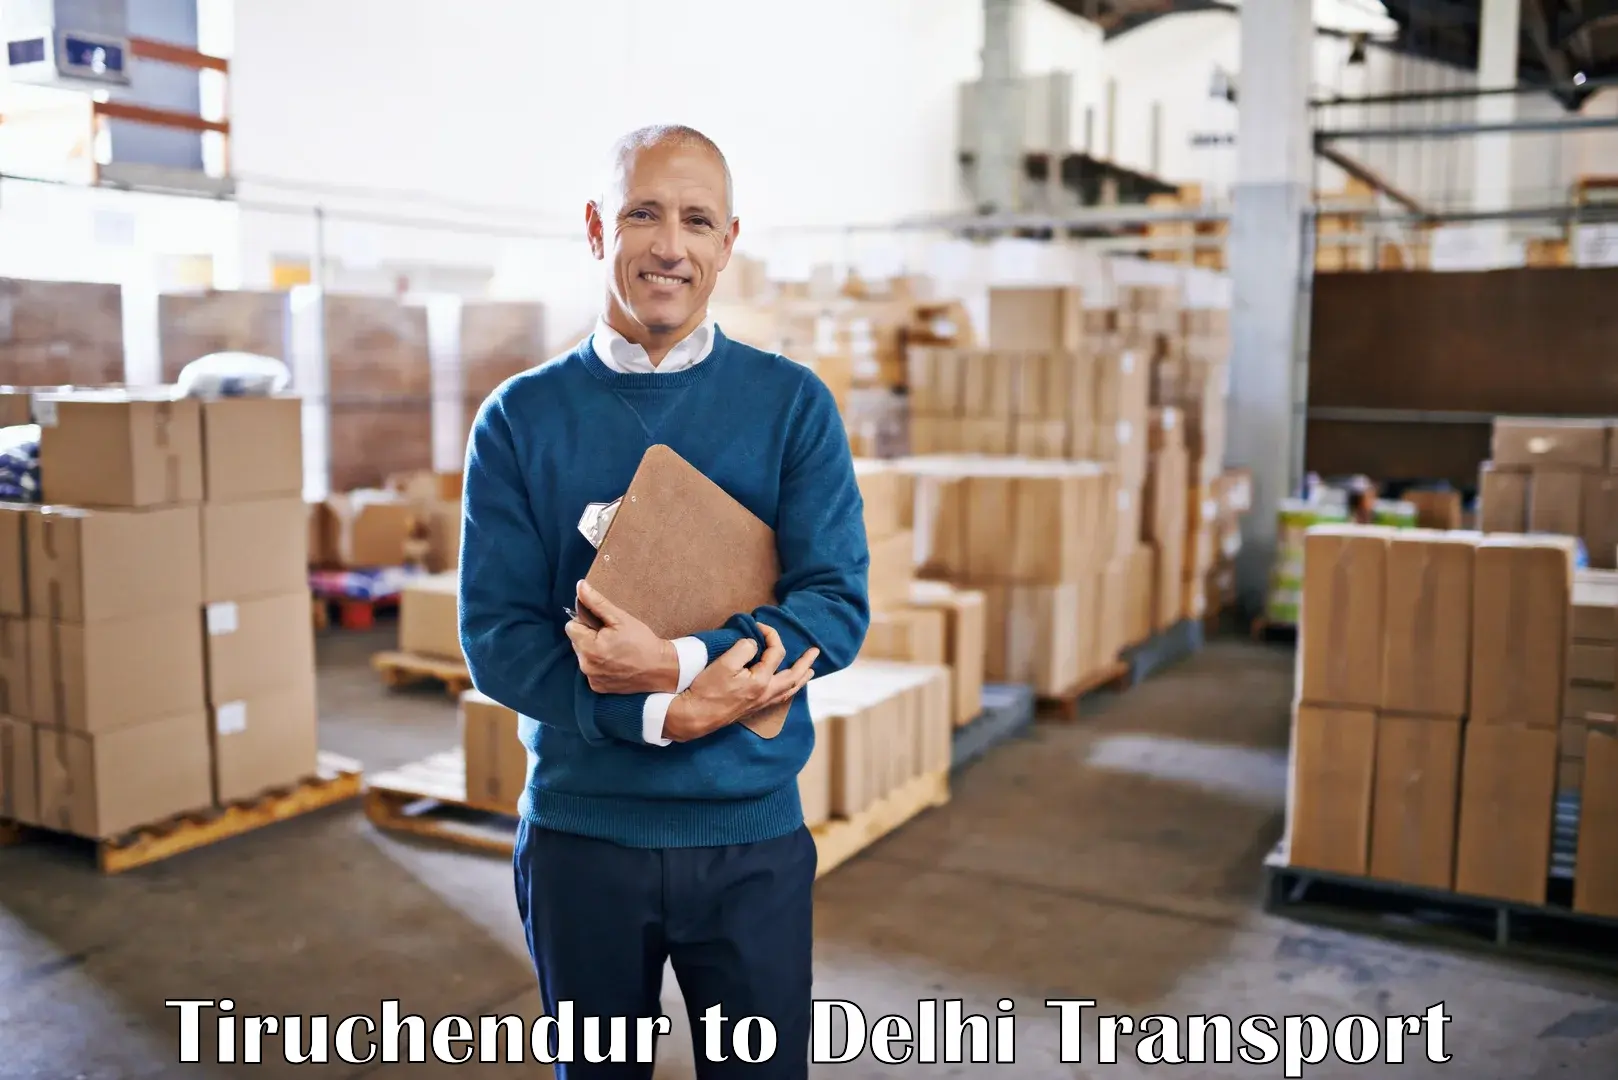 Online transport service Tiruchendur to East Delhi